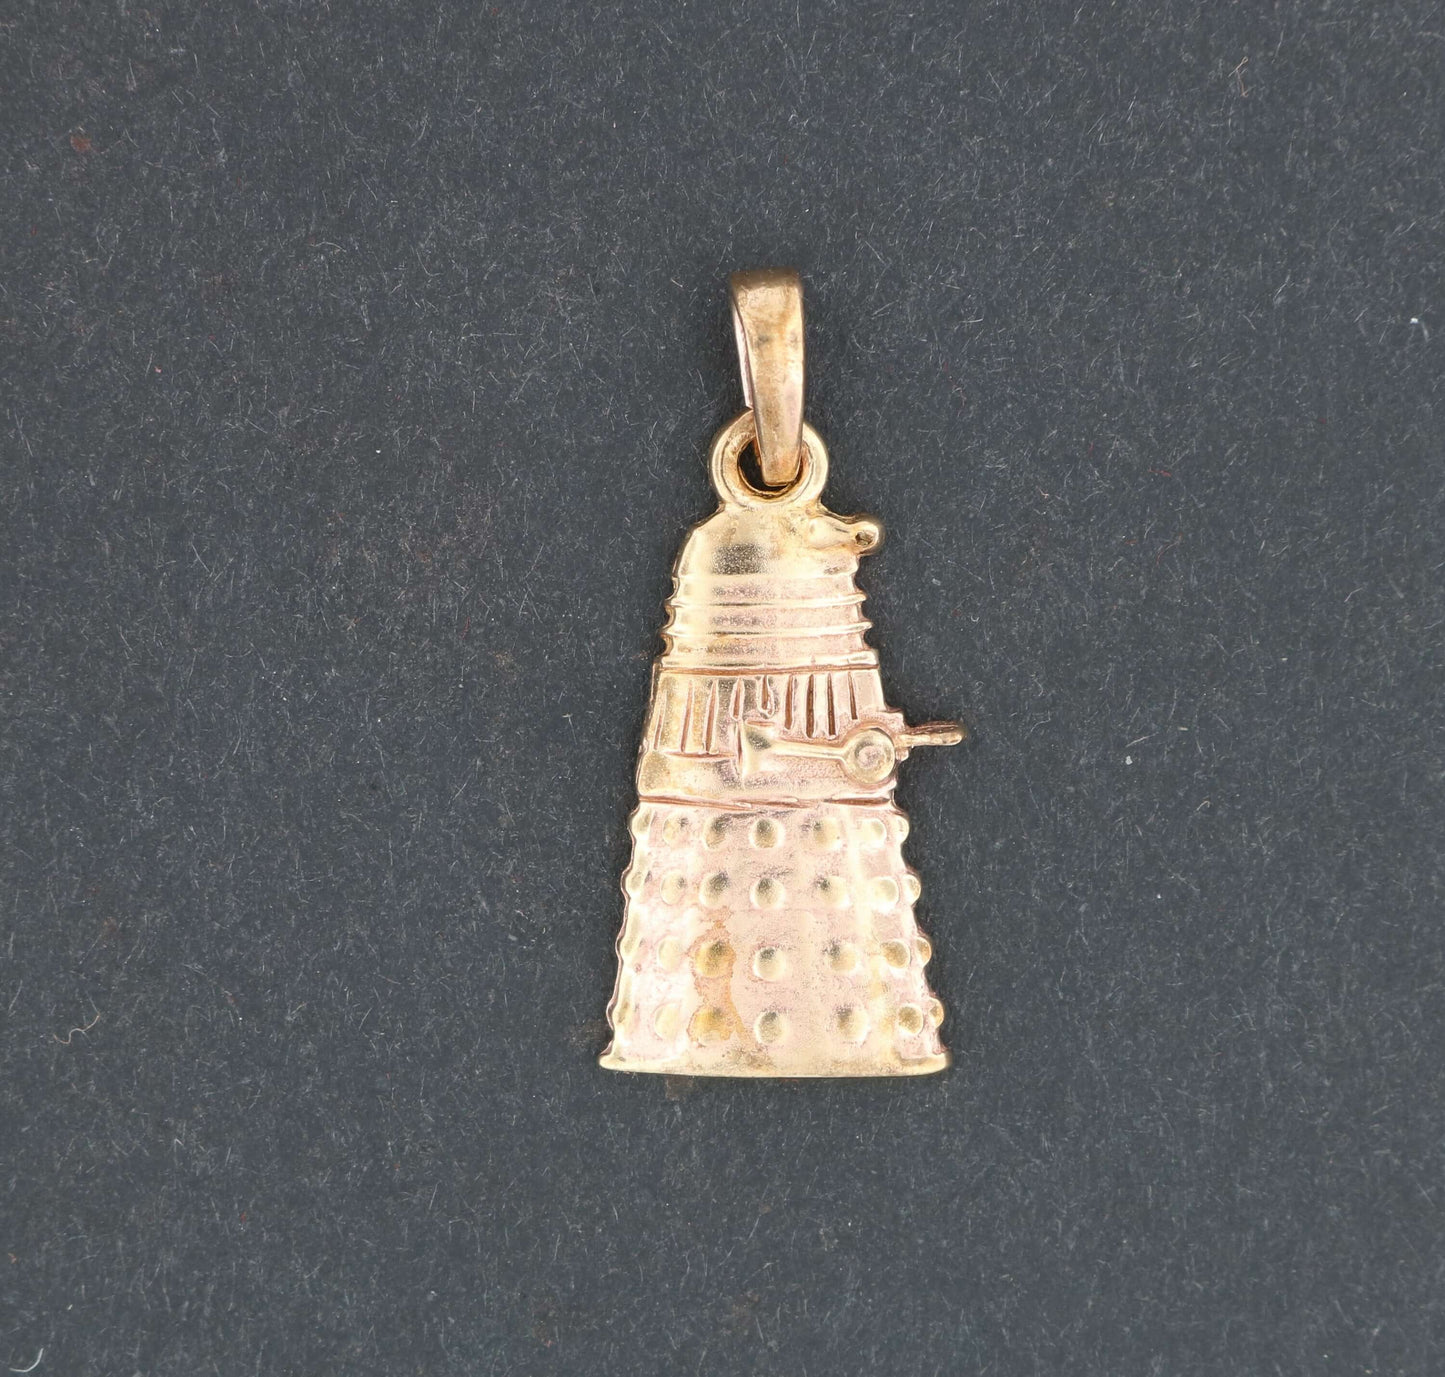 Pendentif Dalek en argent sterling ou bronze antique